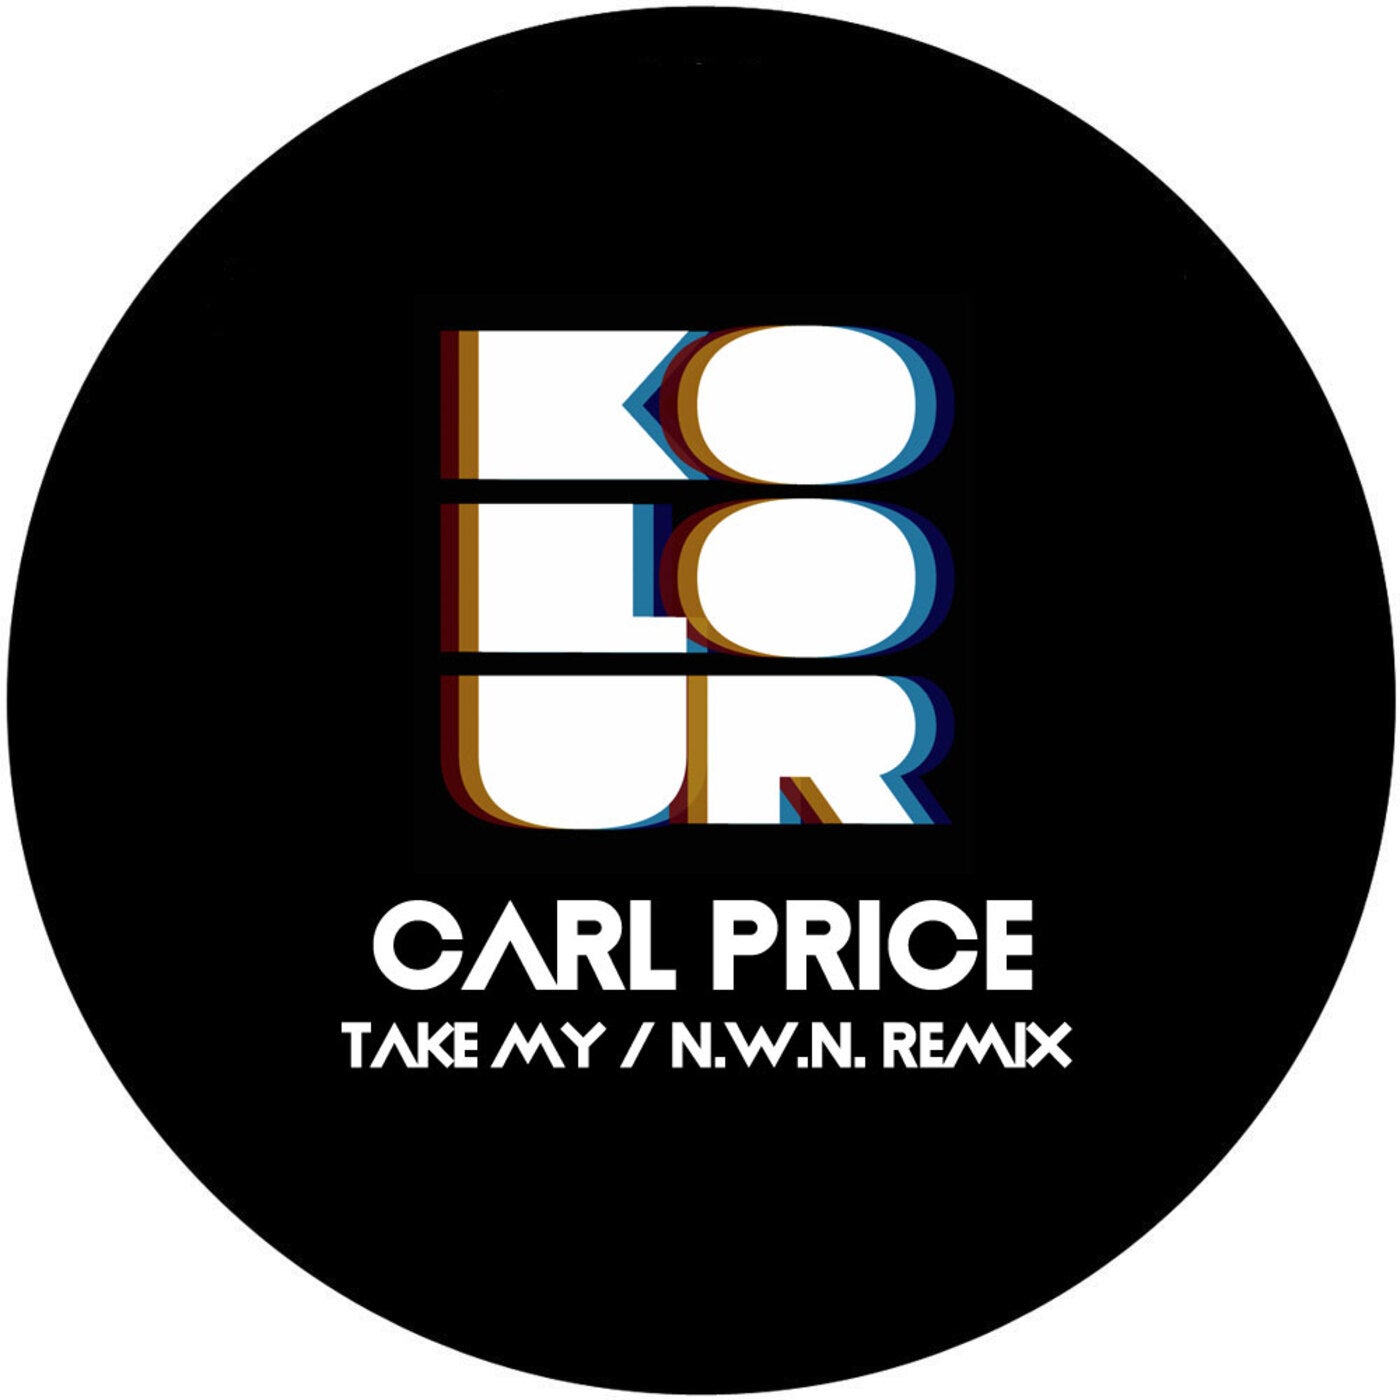 Carl Price - TAKE MY (INCL N.W.N. REMIX) [KRD340]